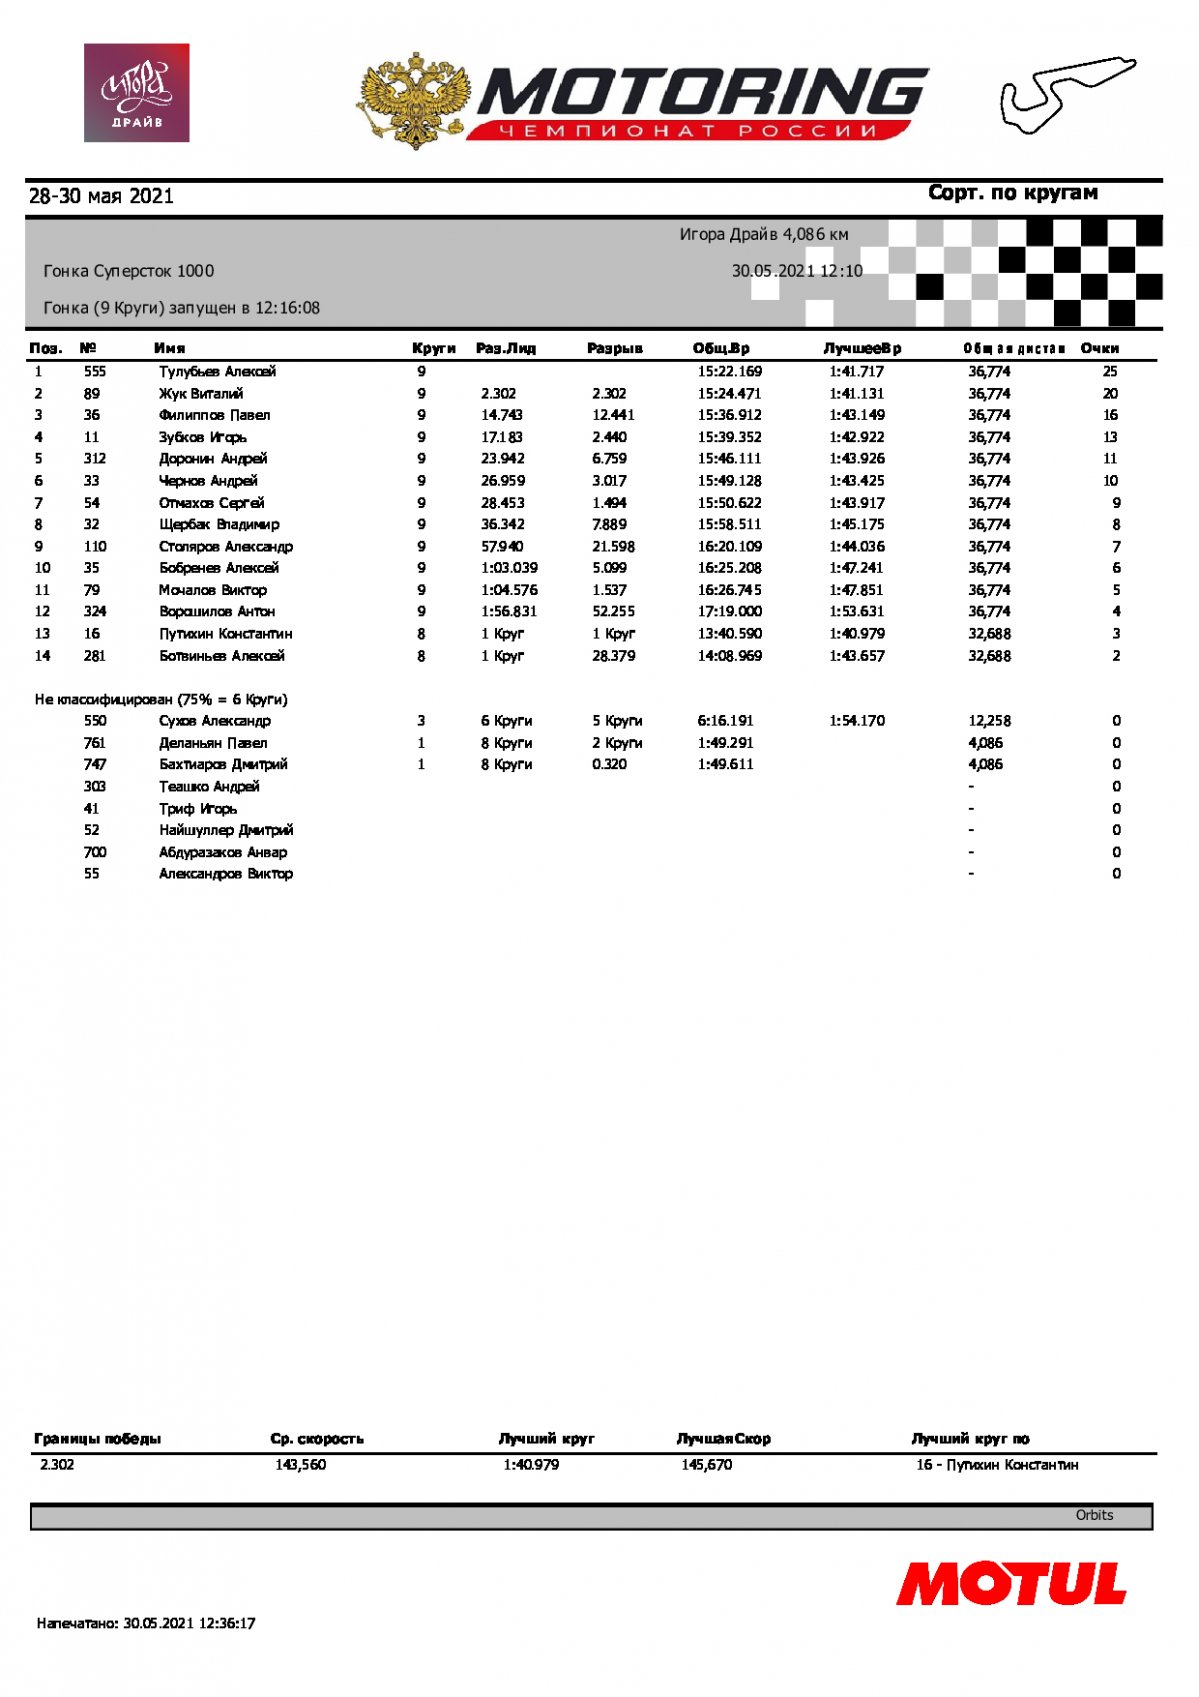 Результаты гонки STK-1000, 2 этап ЧР, Игора Драйв, 30.05.2021